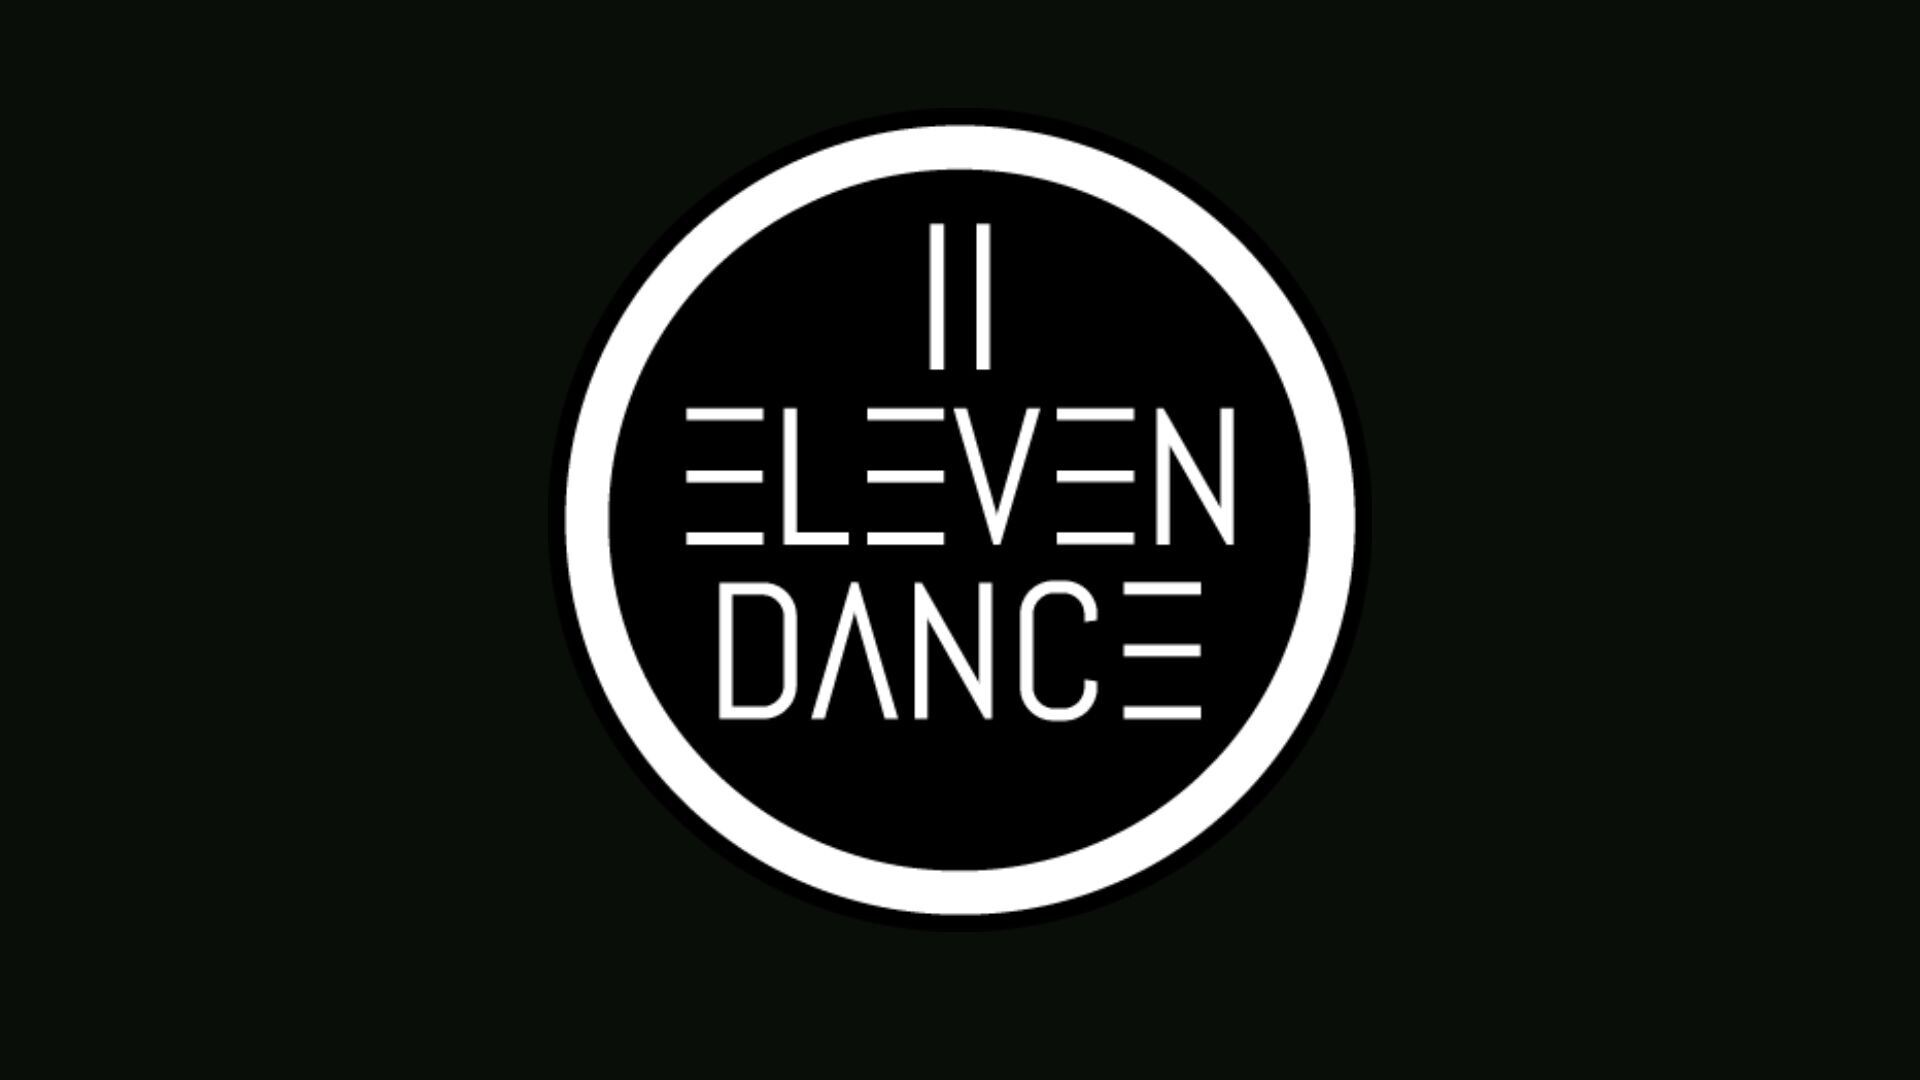 Eleven dance